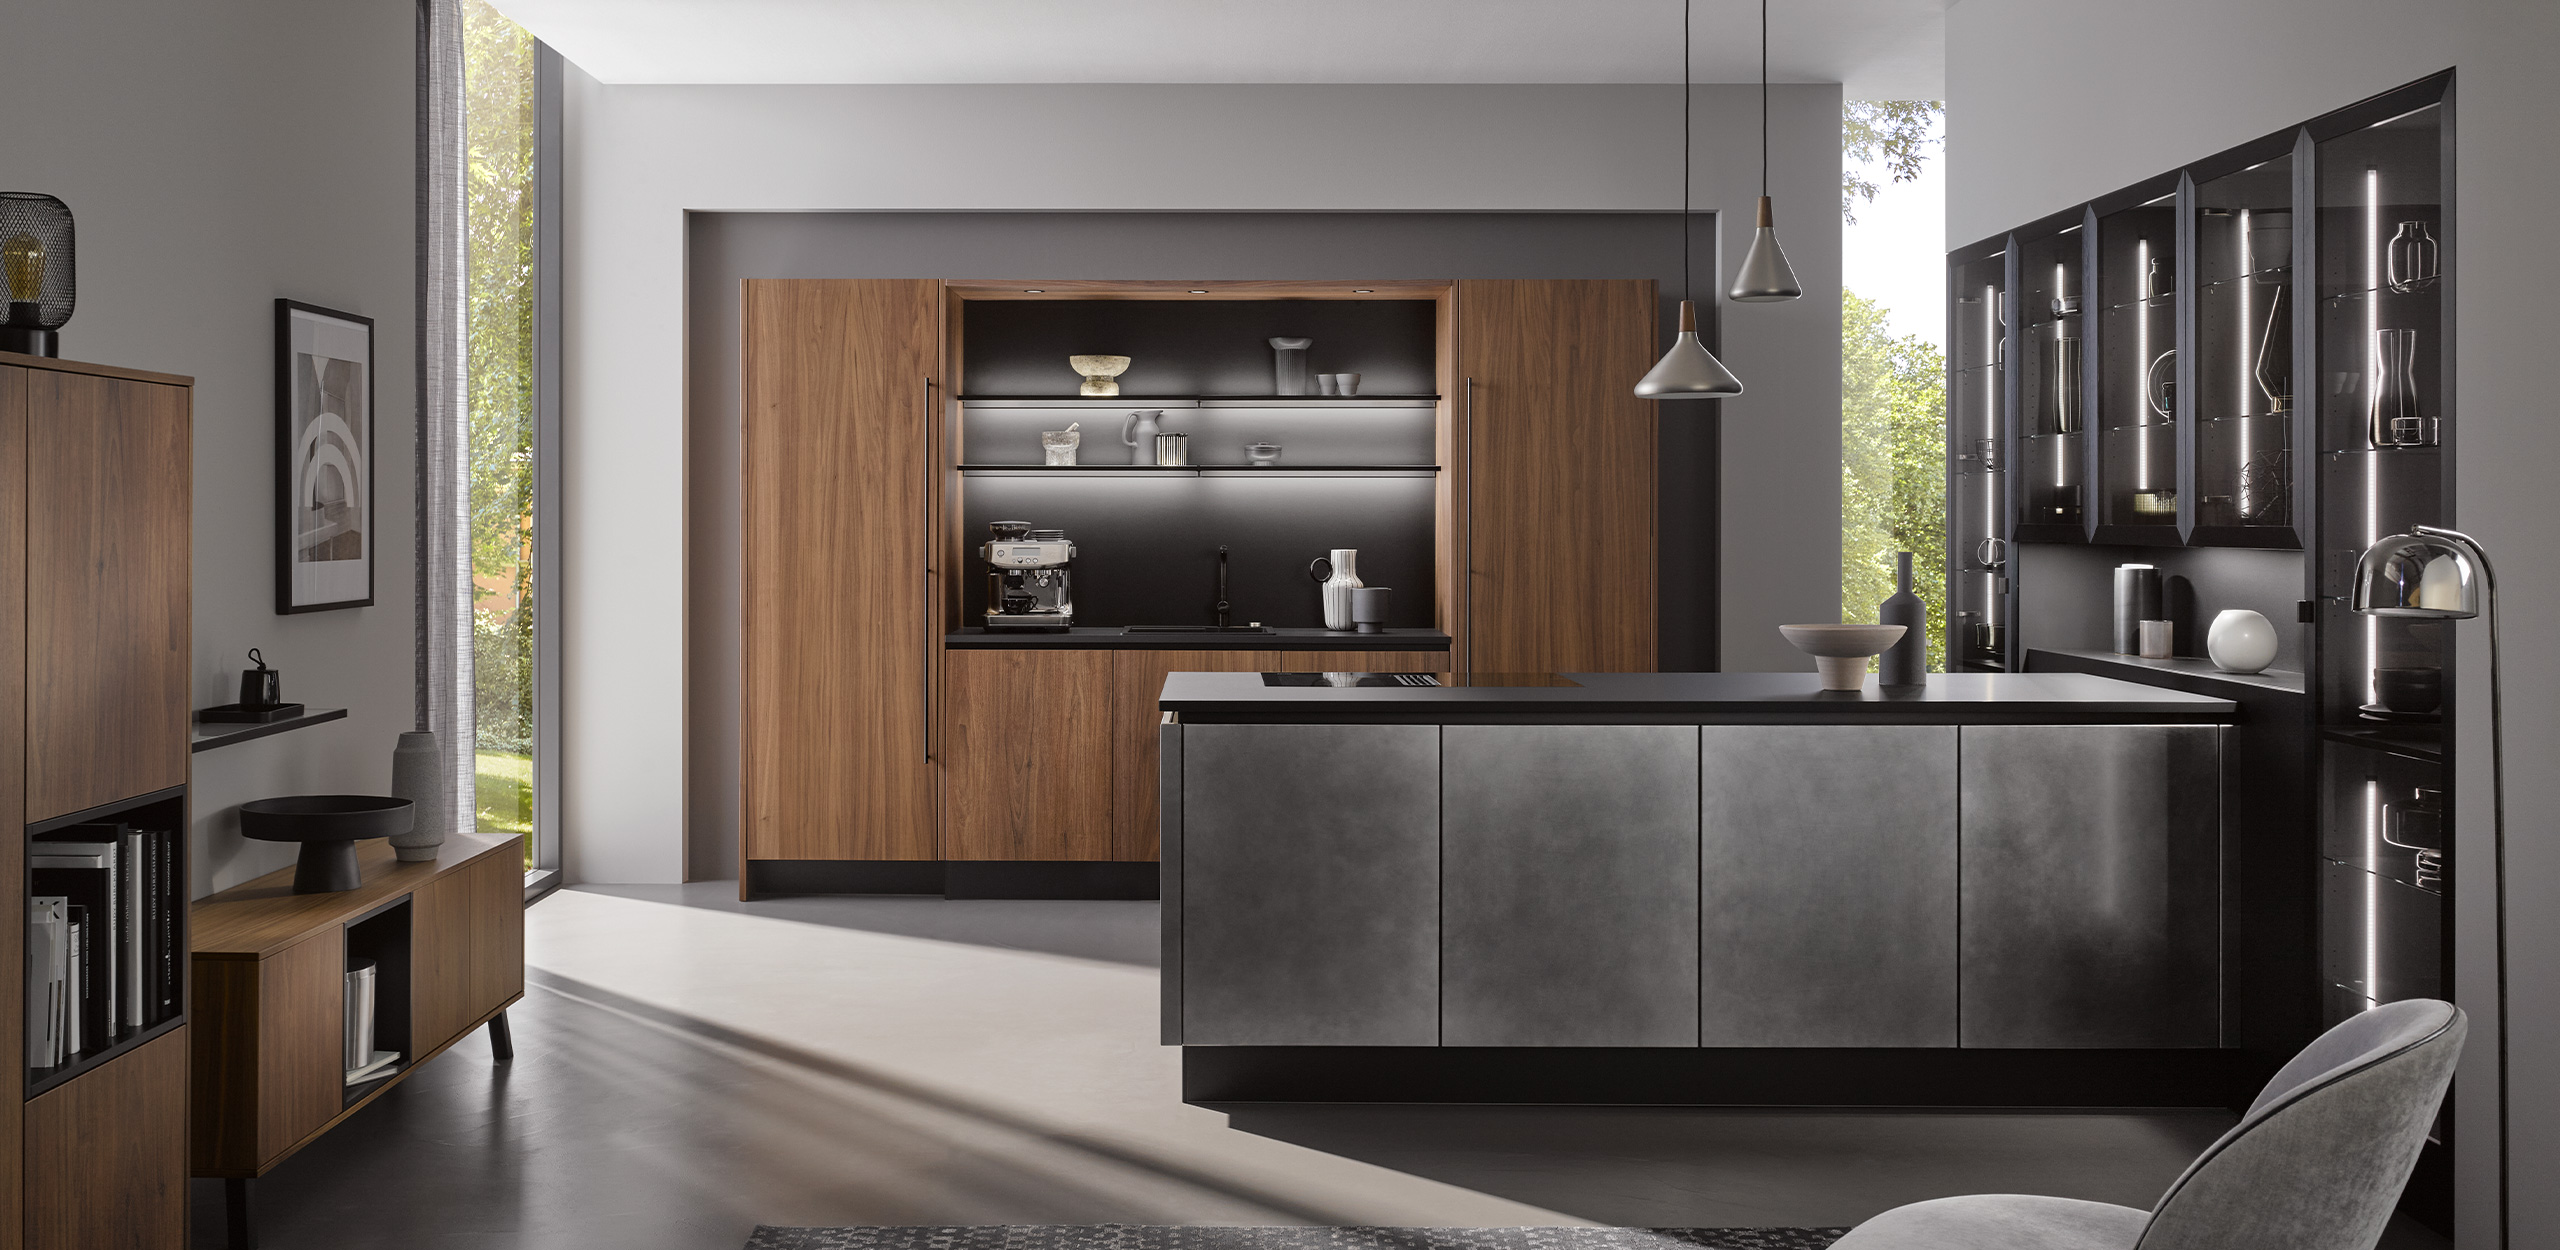 Bild der systemat AV 6082-GL Nussbaum-elegant mit Kücheninsel im Industriestahl-Look im Vordergrund 